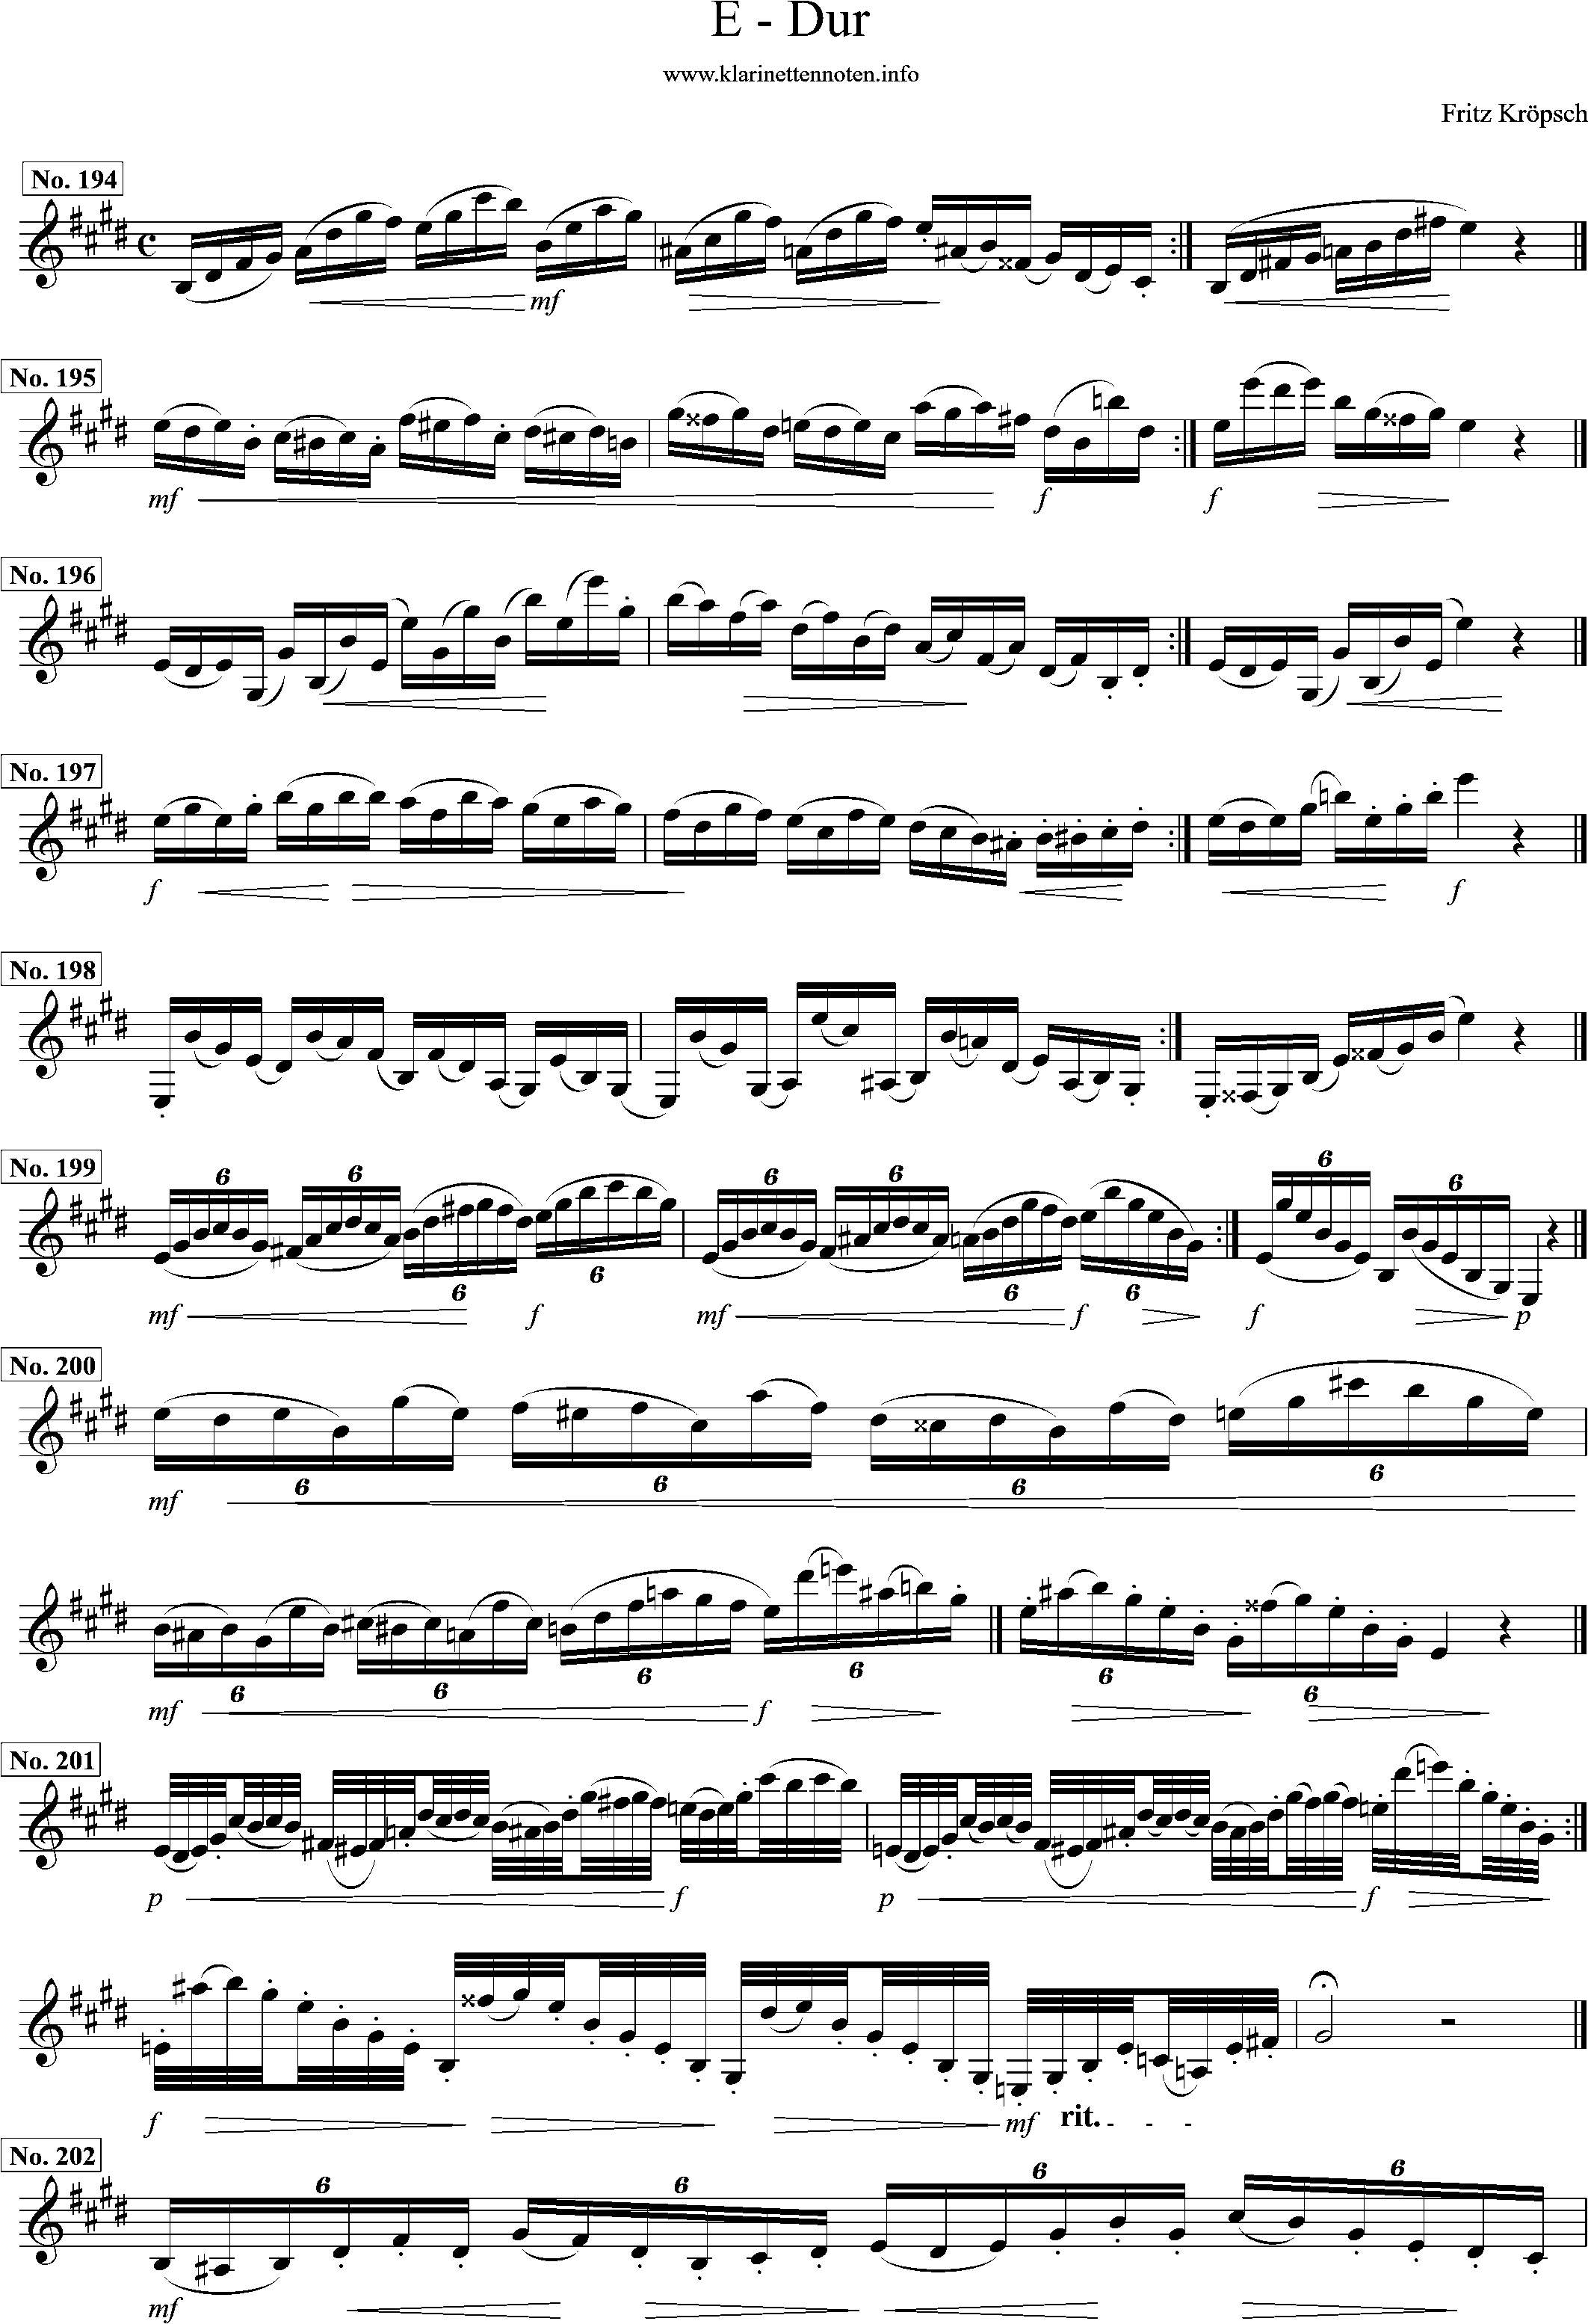 416 etüden, kröpsch e-major, page1